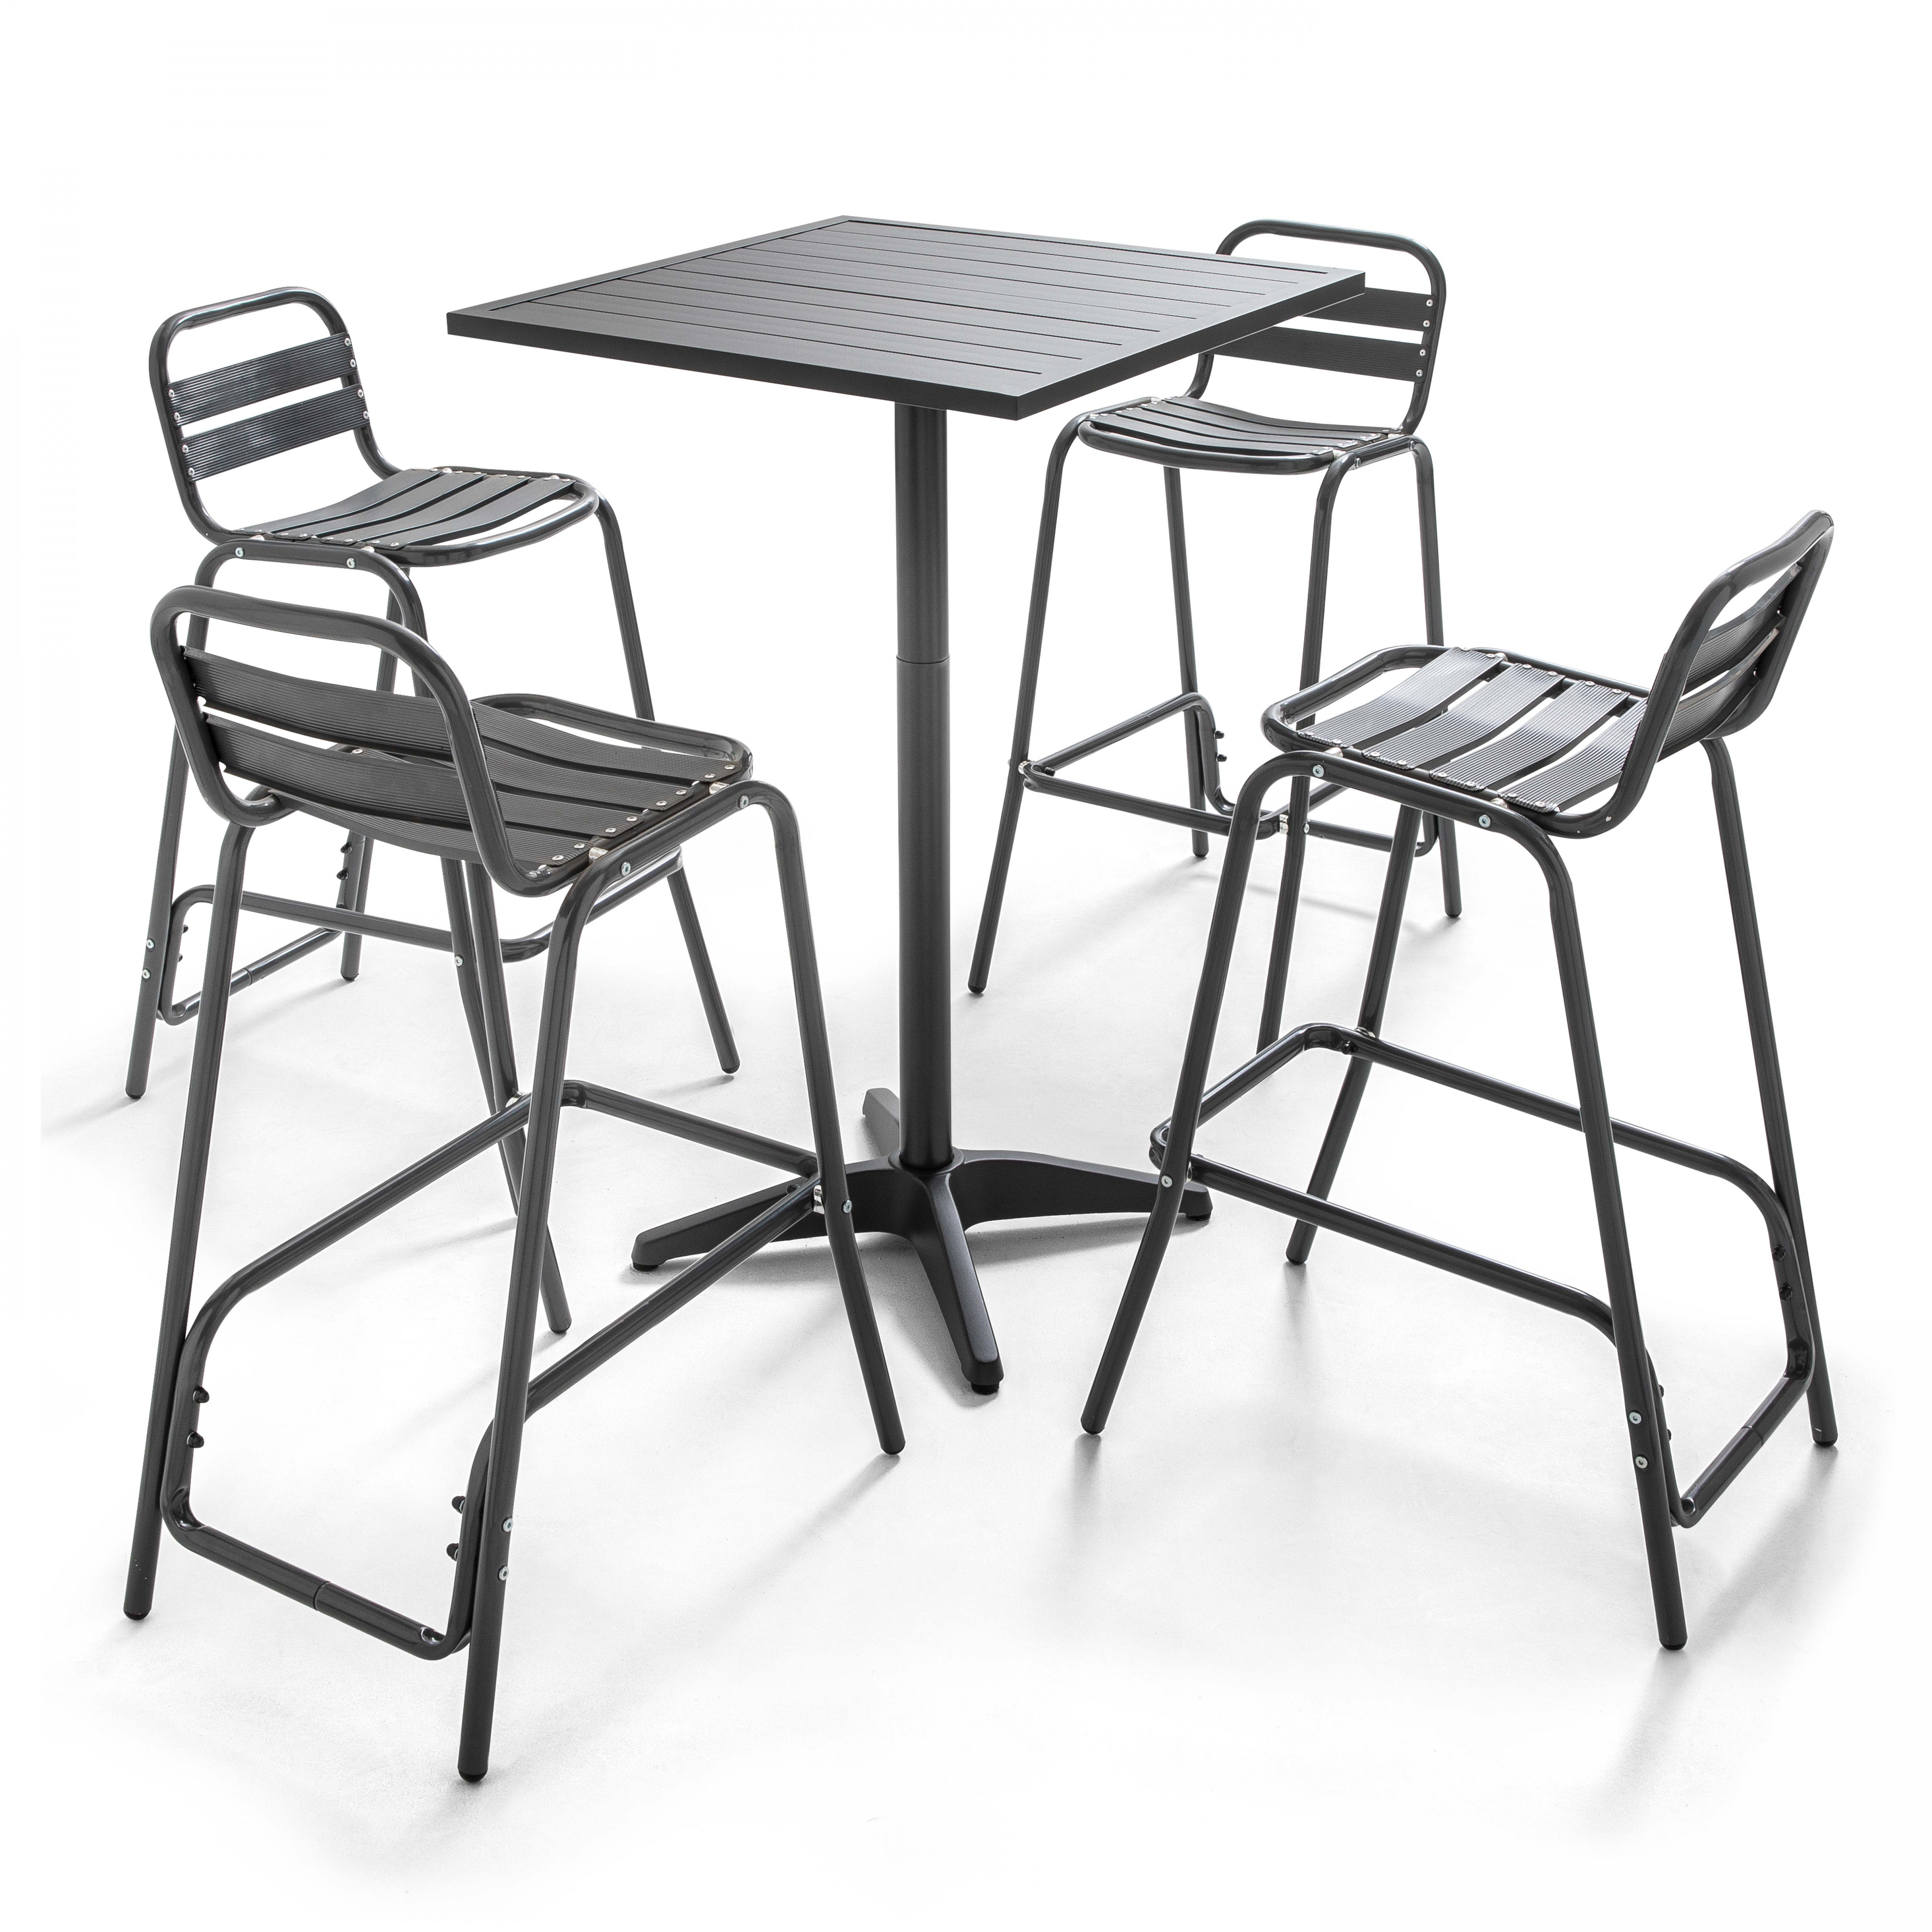 Table de jardin grise mange-debout et 4 chaises hautes en aluminium